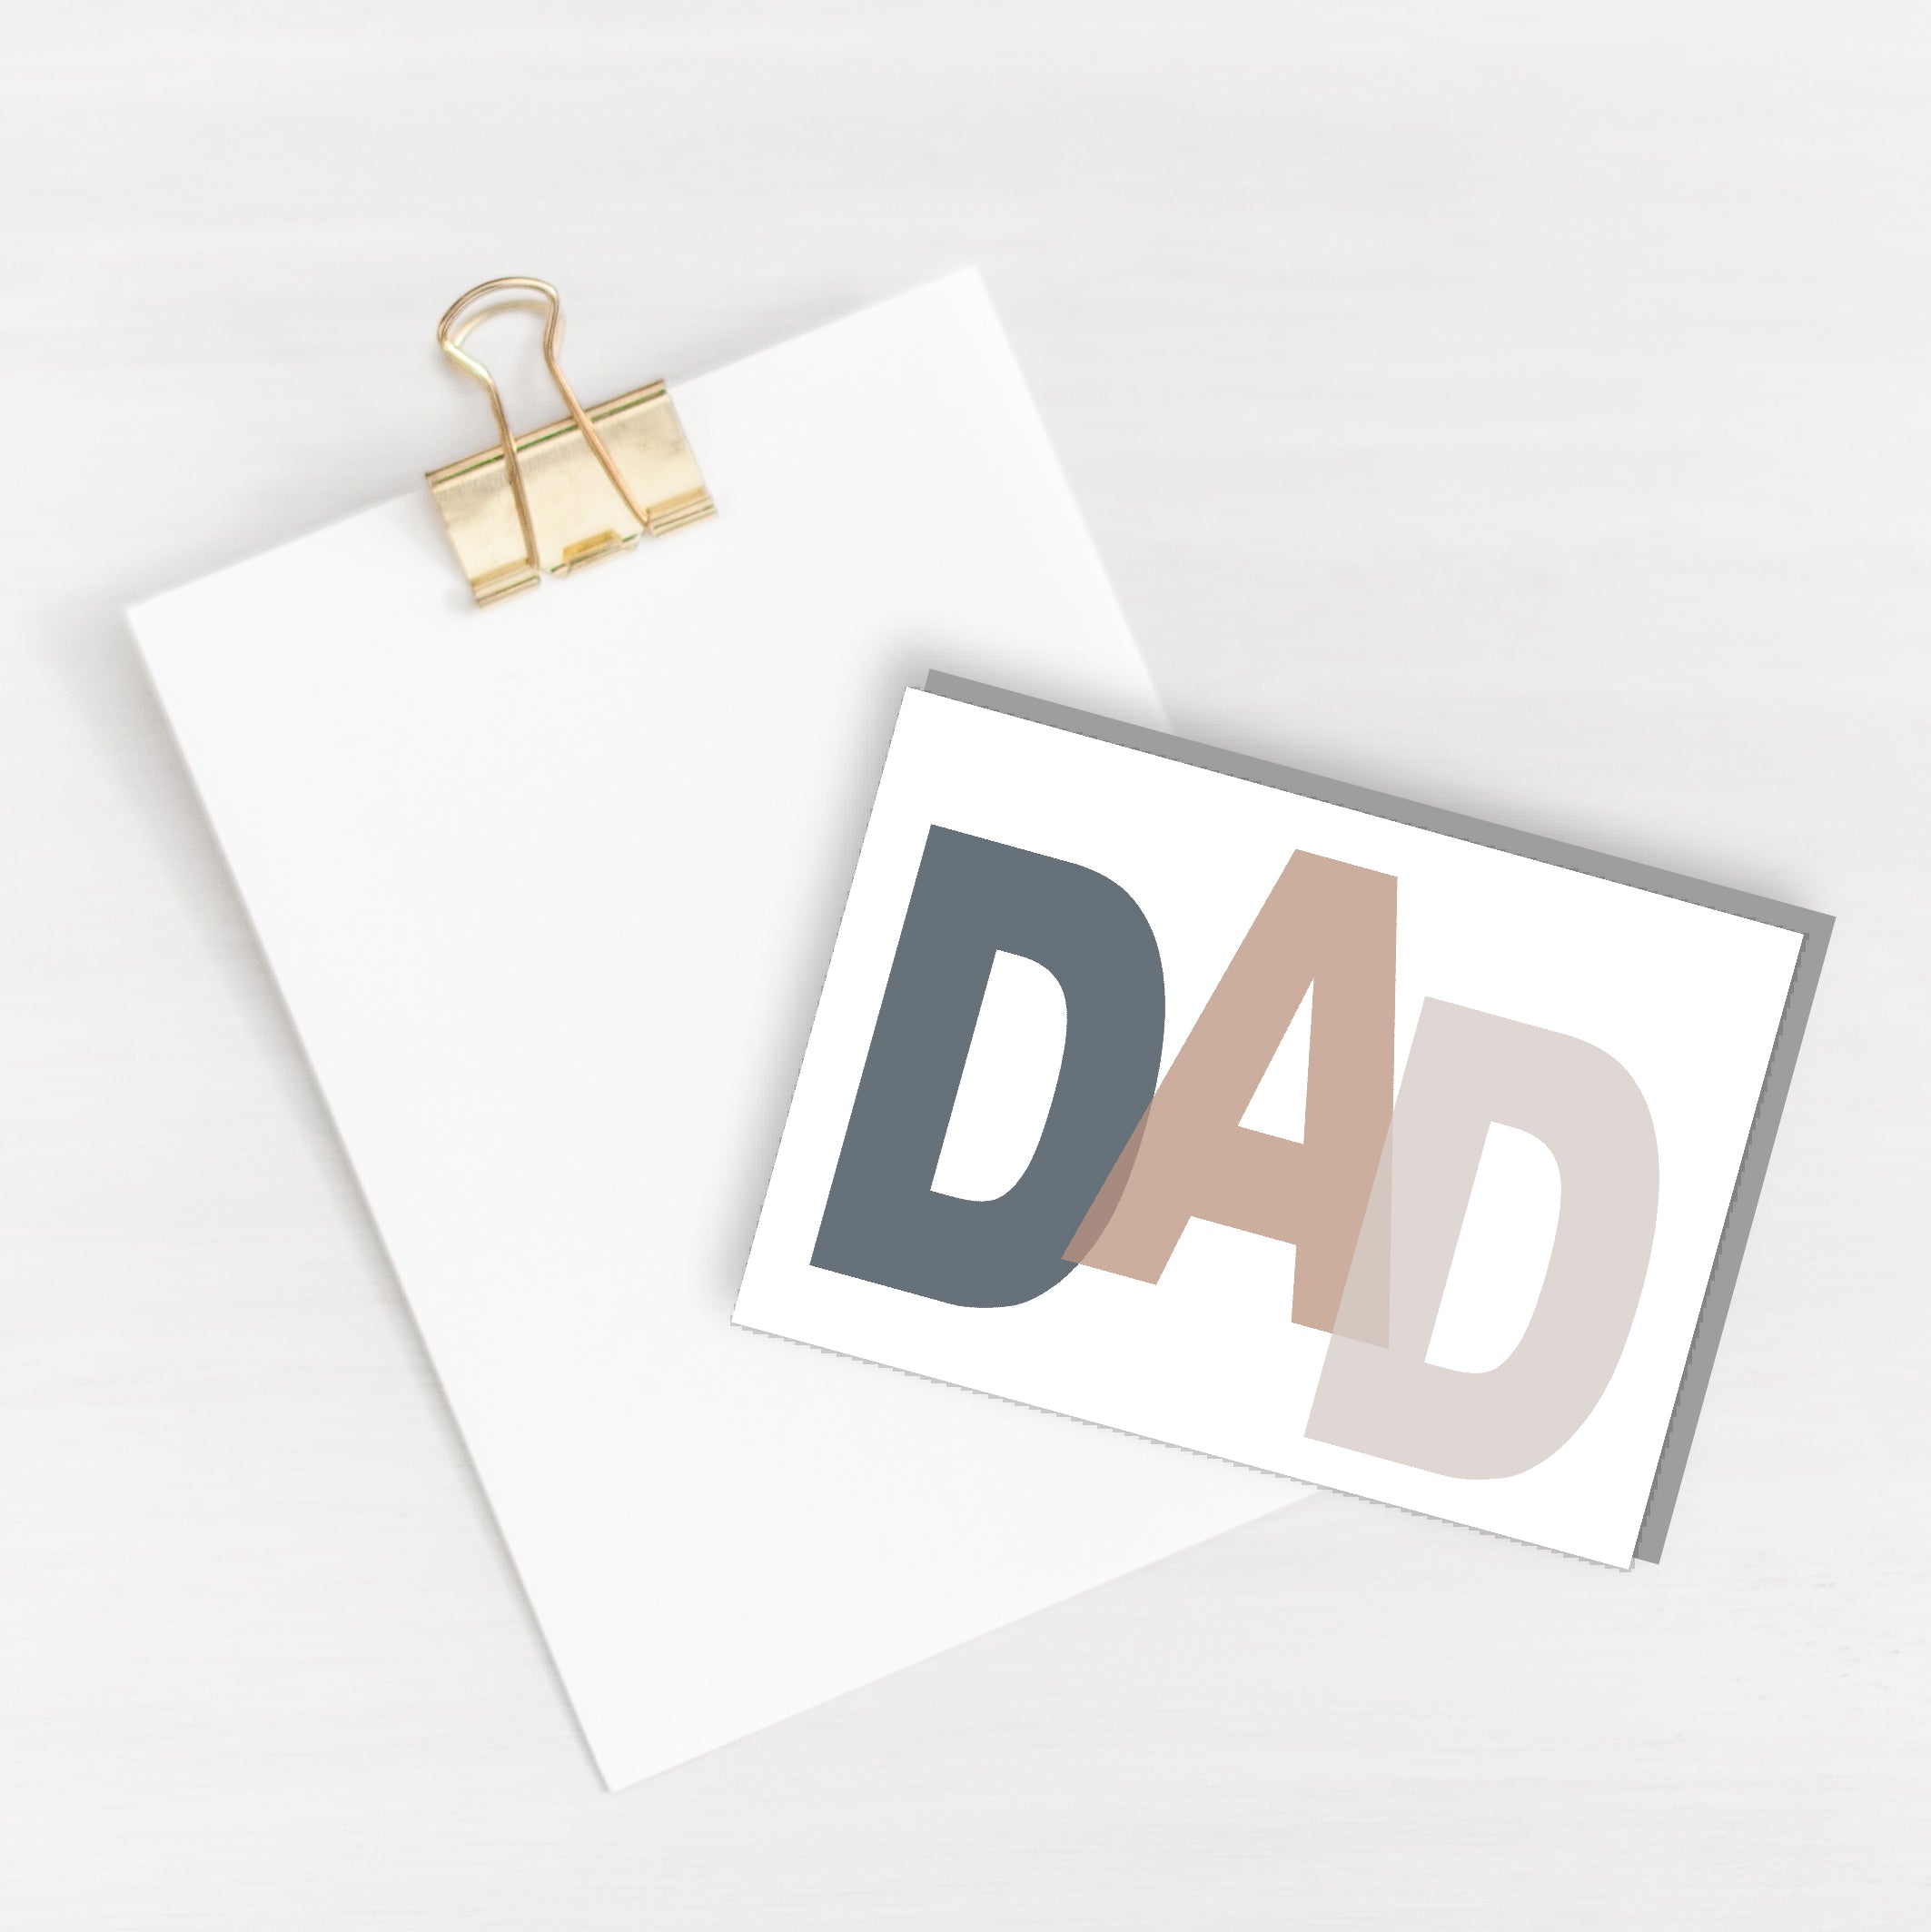 DAD Card